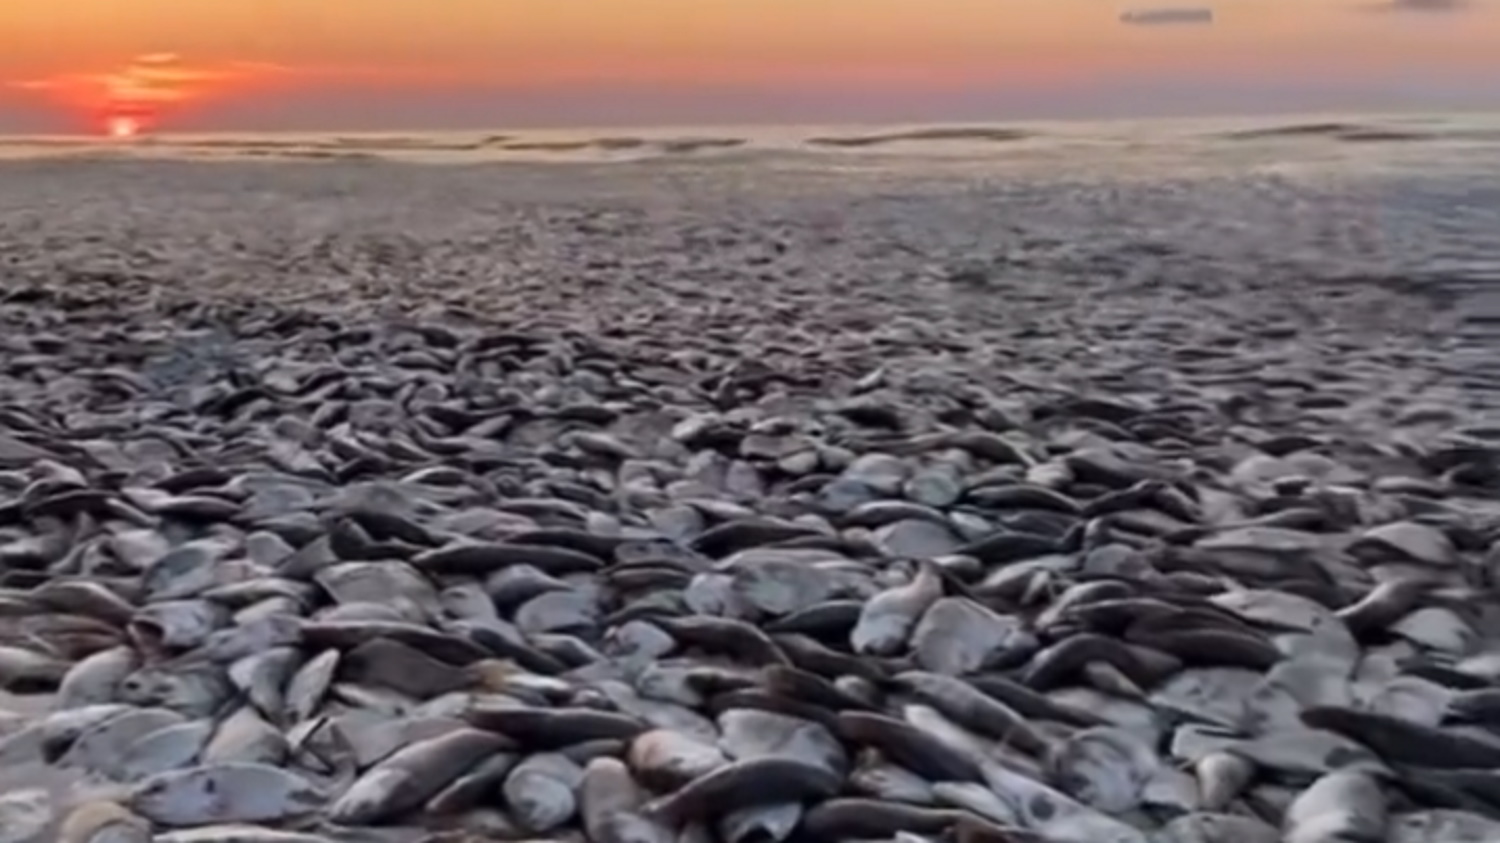 Τέξας: Η θάλασσα ξέβρασε χιλιάδες νεκρά ψάρια – Απόκοσμες εικόνες από το φαινόμενο